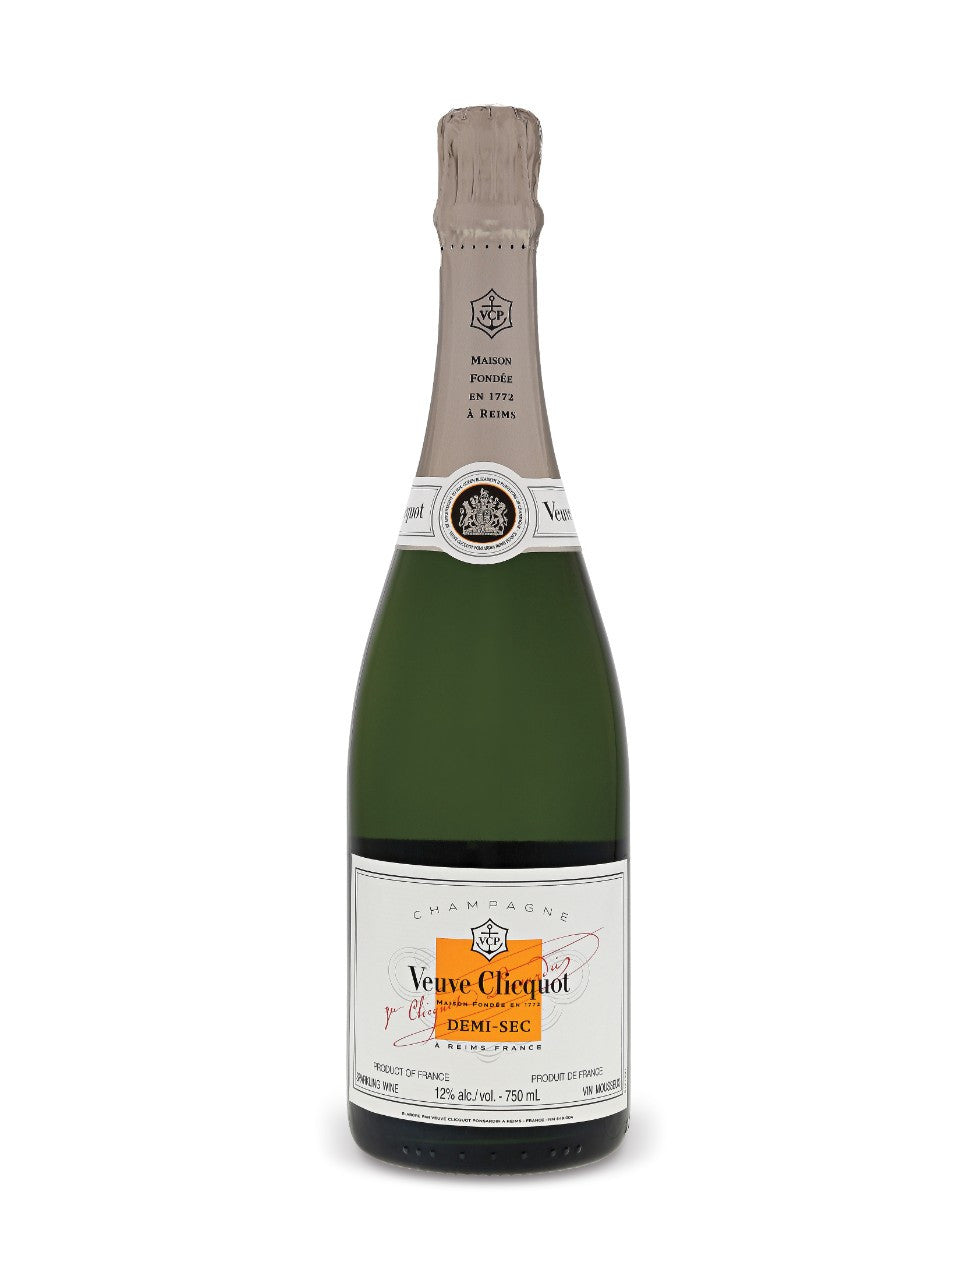 Veuve Clicquot - Demi-Sec Champagne - Friar Tuck - Peoria, IL